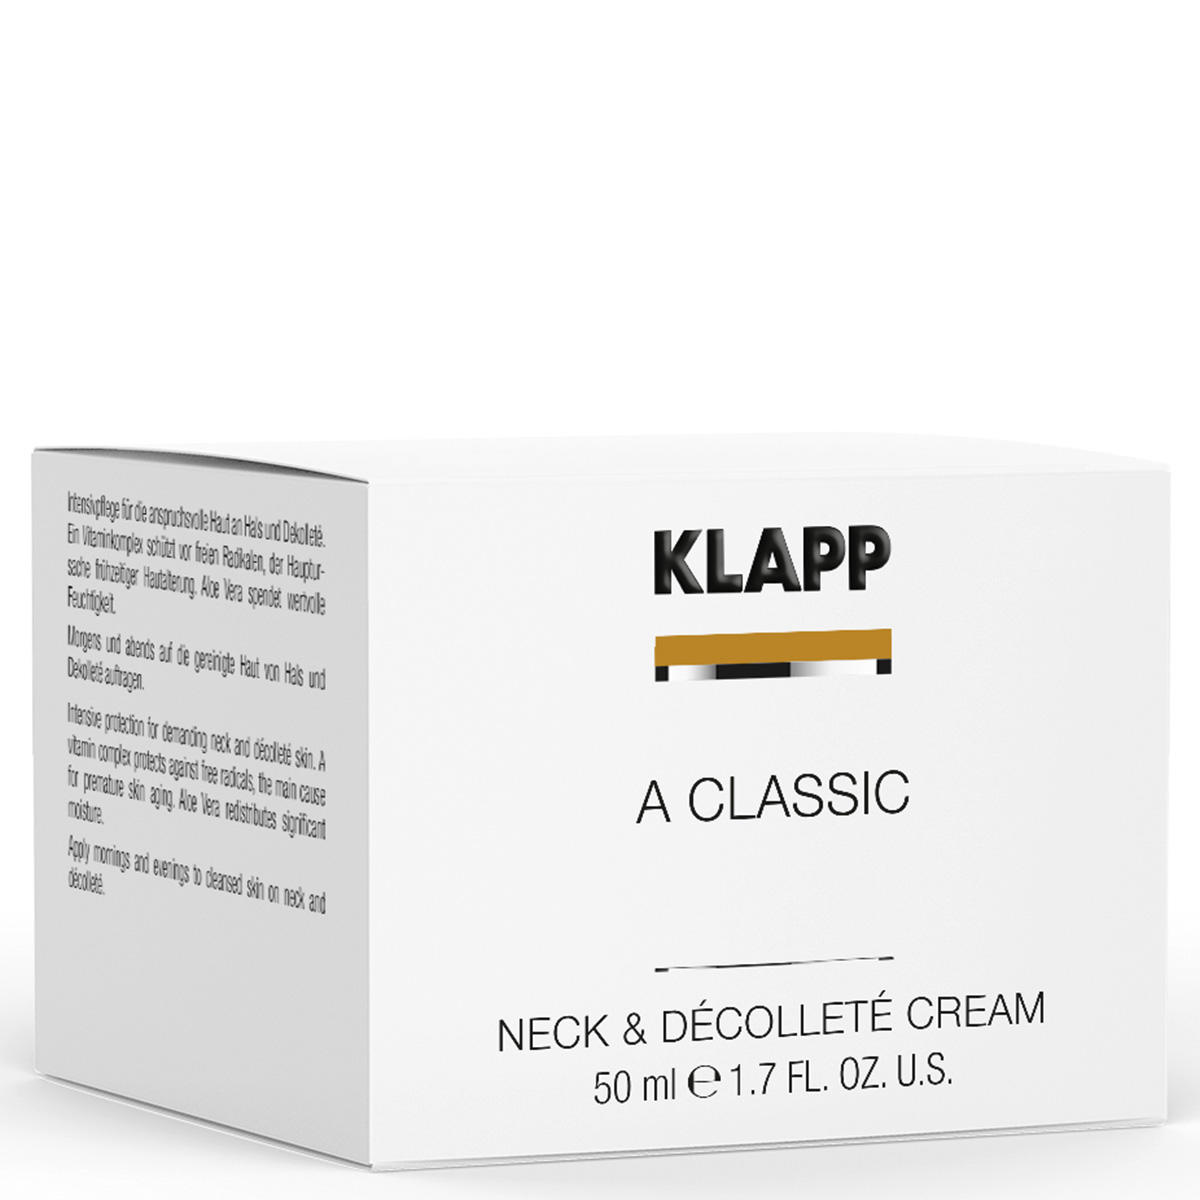 KLAPP A CLASSIC Neck & Décolleté Cream 50 ml - 2